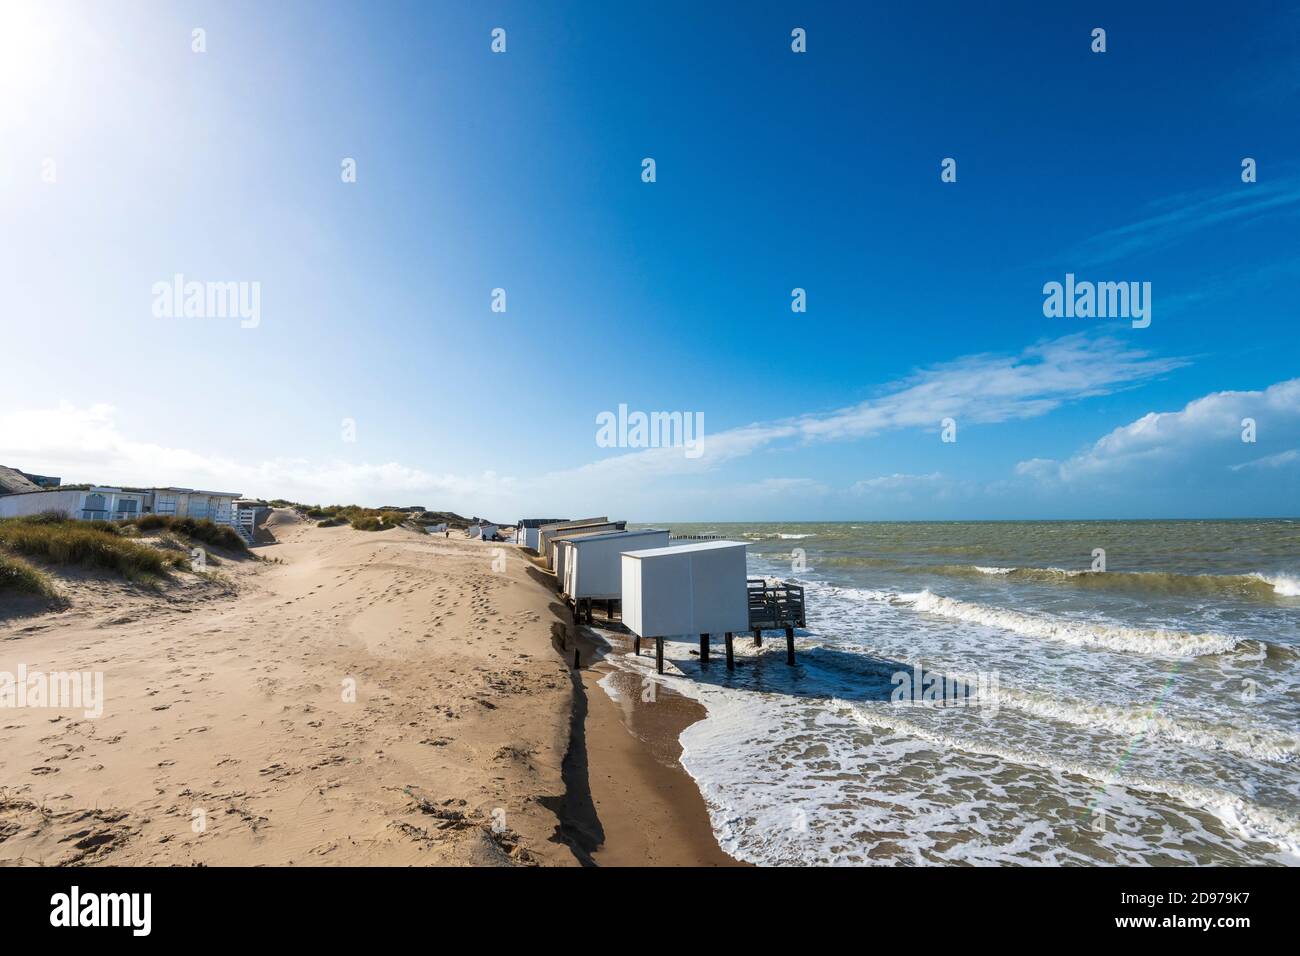 Cabañas de playa invadidas por el mar, durante las mareas altas, Sangatte, Pas de Calais, Francia Foto de stock